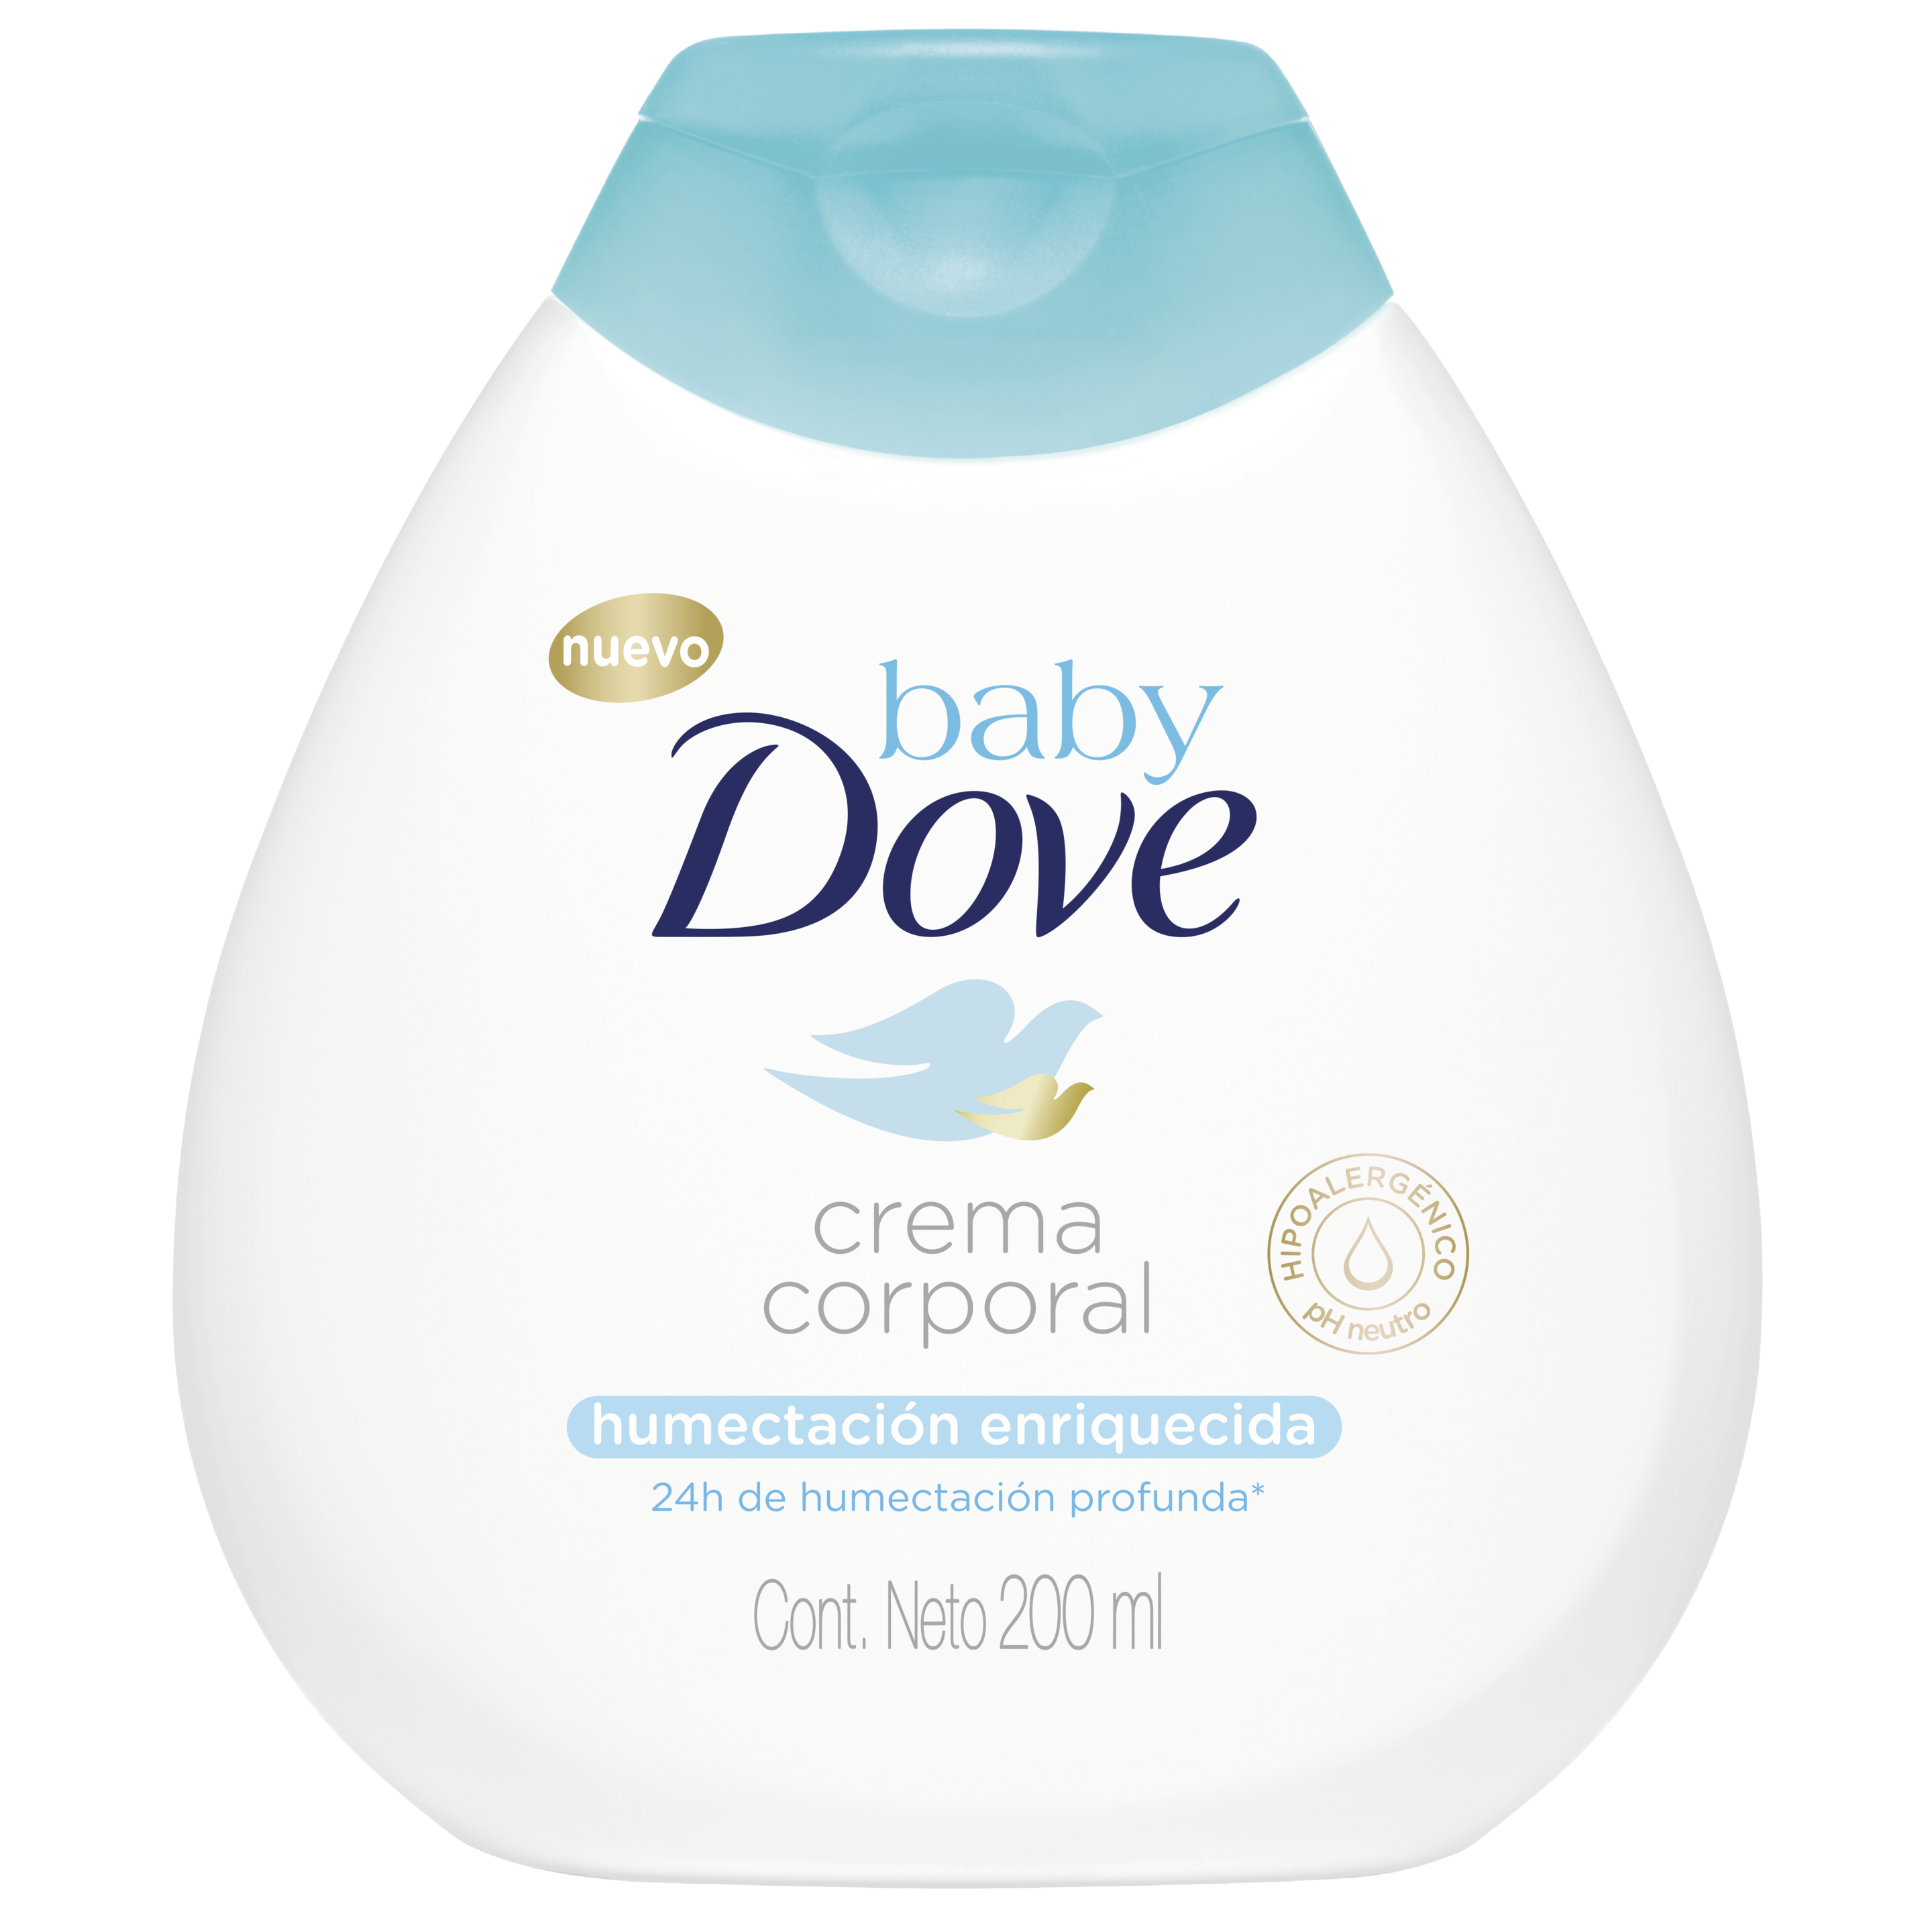 Descubre la crema corporal con humectación enriquecida de Baby Dove